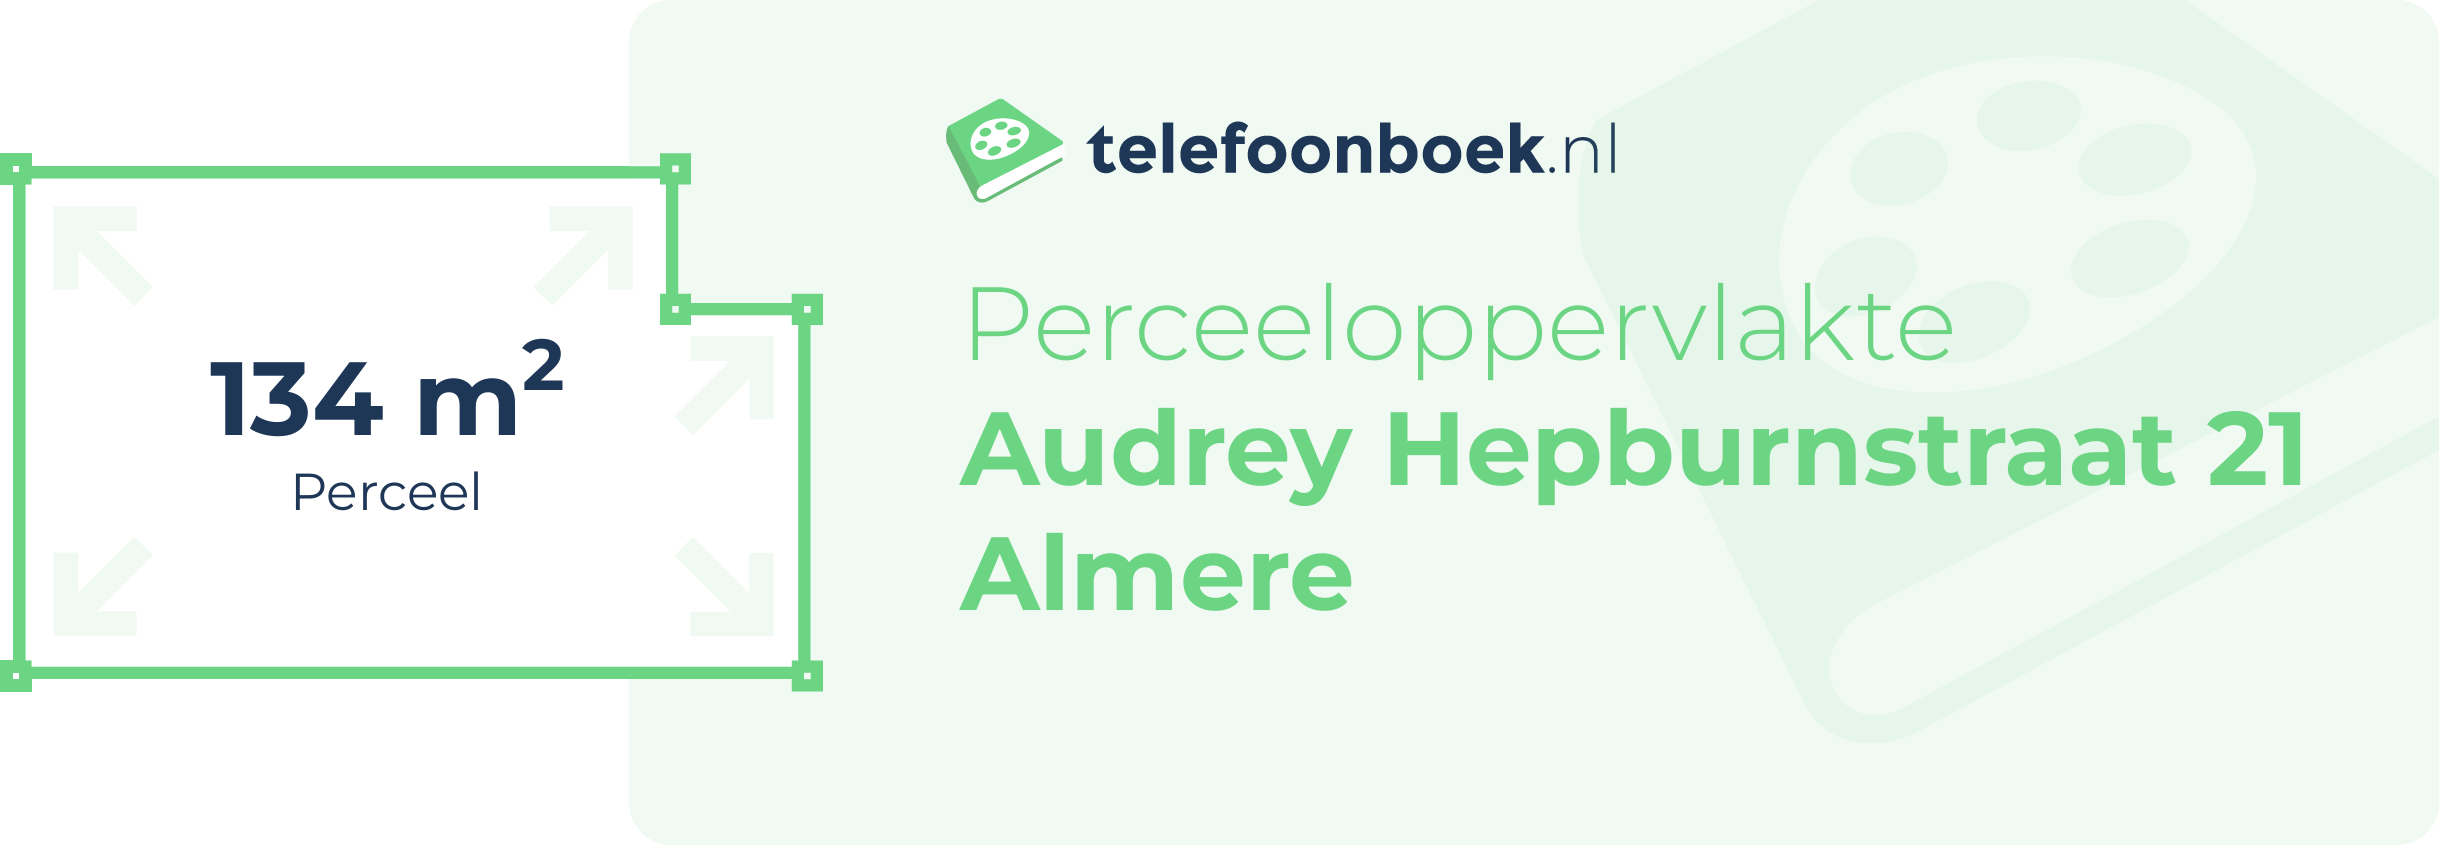 Perceeloppervlakte Audrey Hepburnstraat 21 Almere